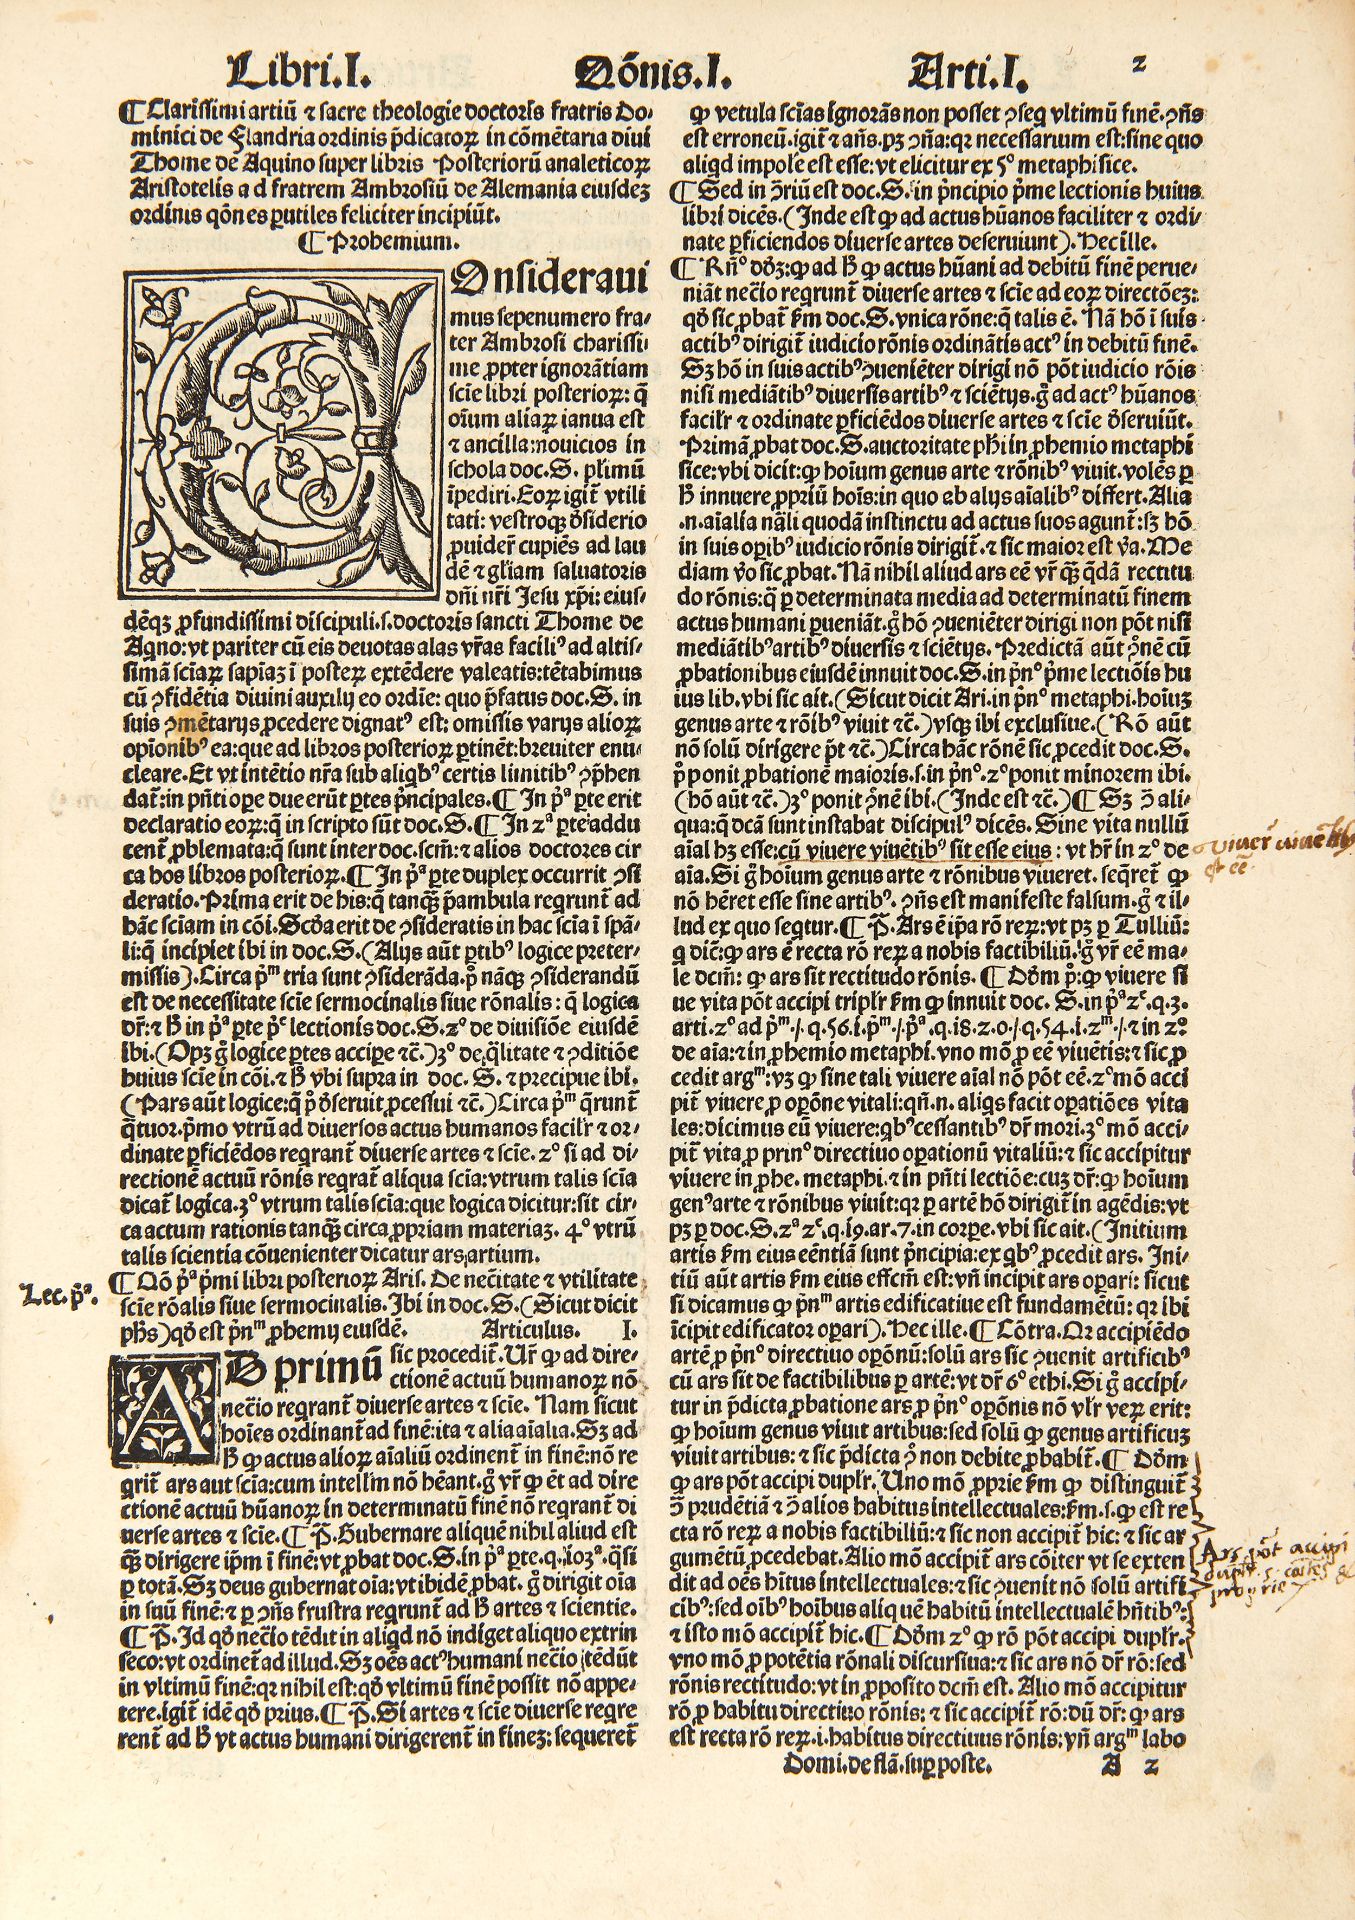 [ARISTOTLE] DOMINICUS DE FLANDRA (1425-1500). Commentaria super libris posteriorum Aristotelis, - Image 3 of 3